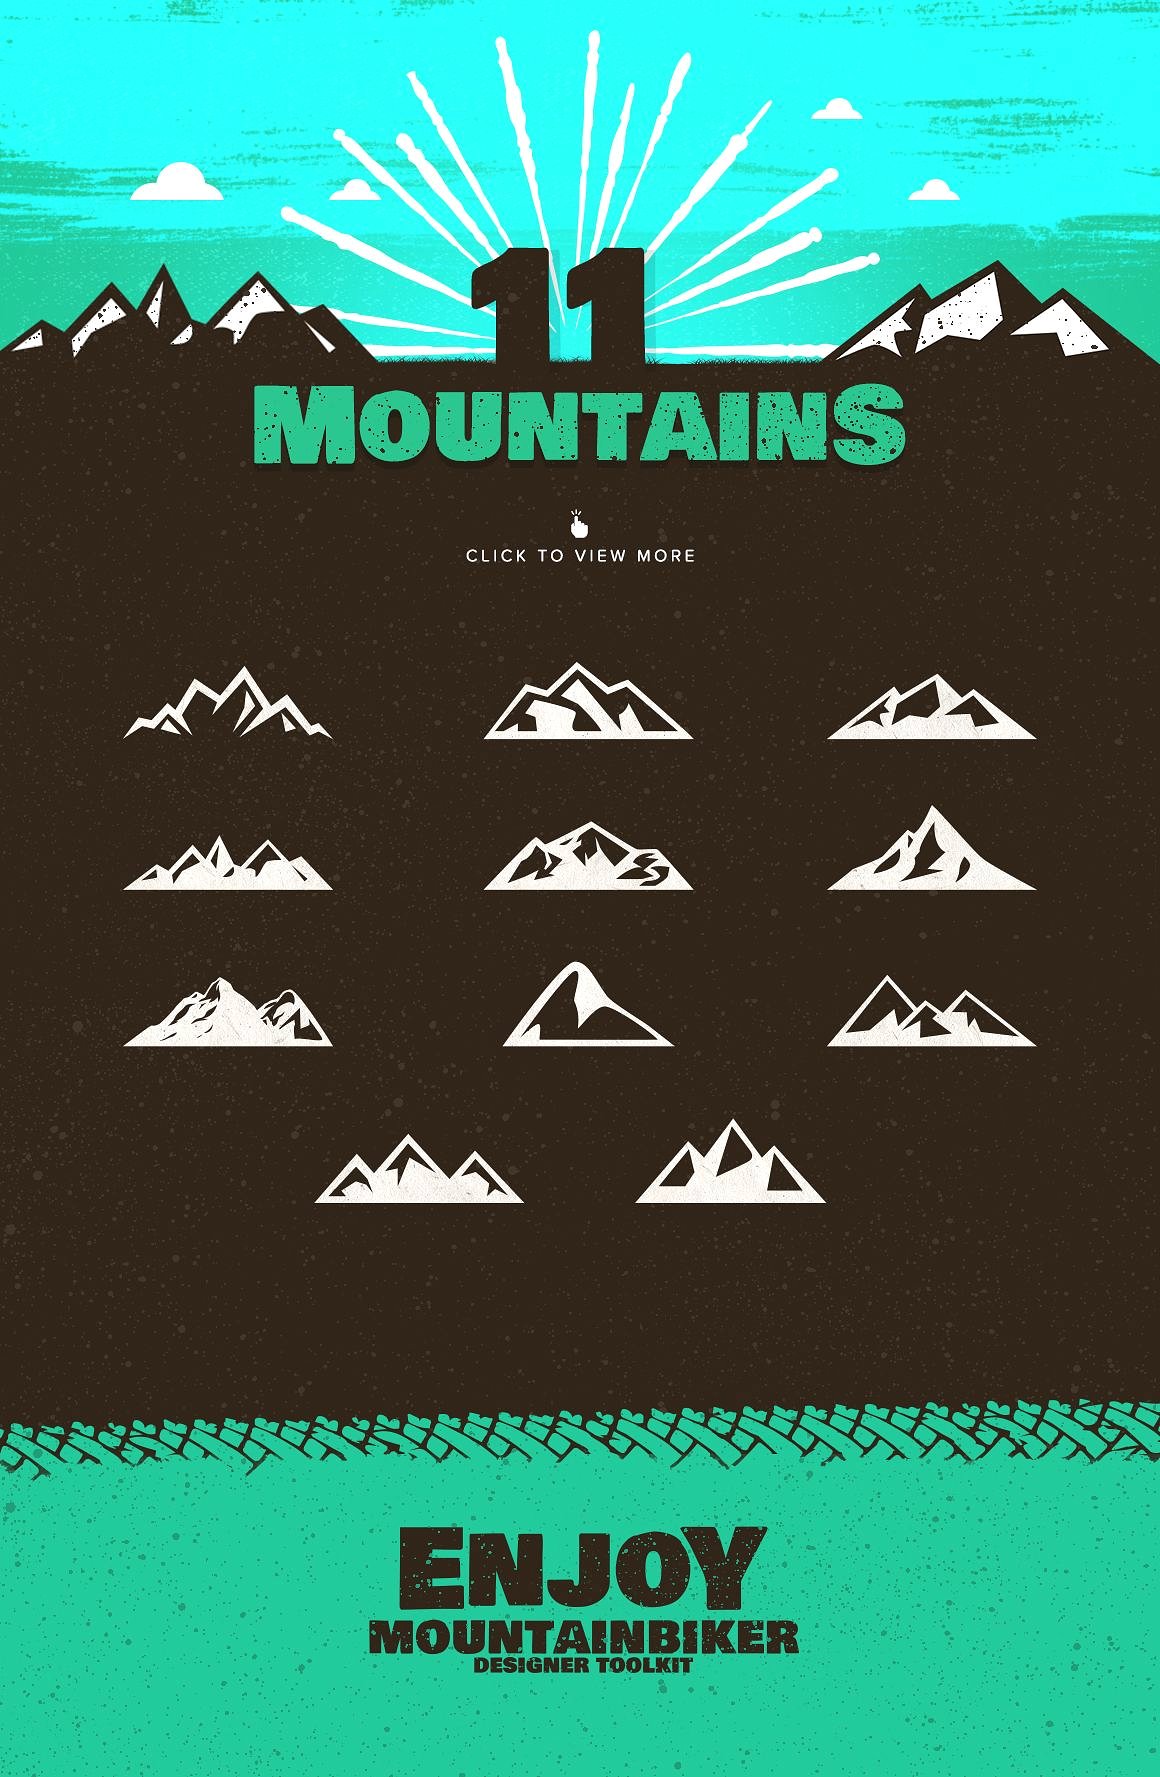 山地自行车极限运动品牌标志Logo模板 The-Mounta